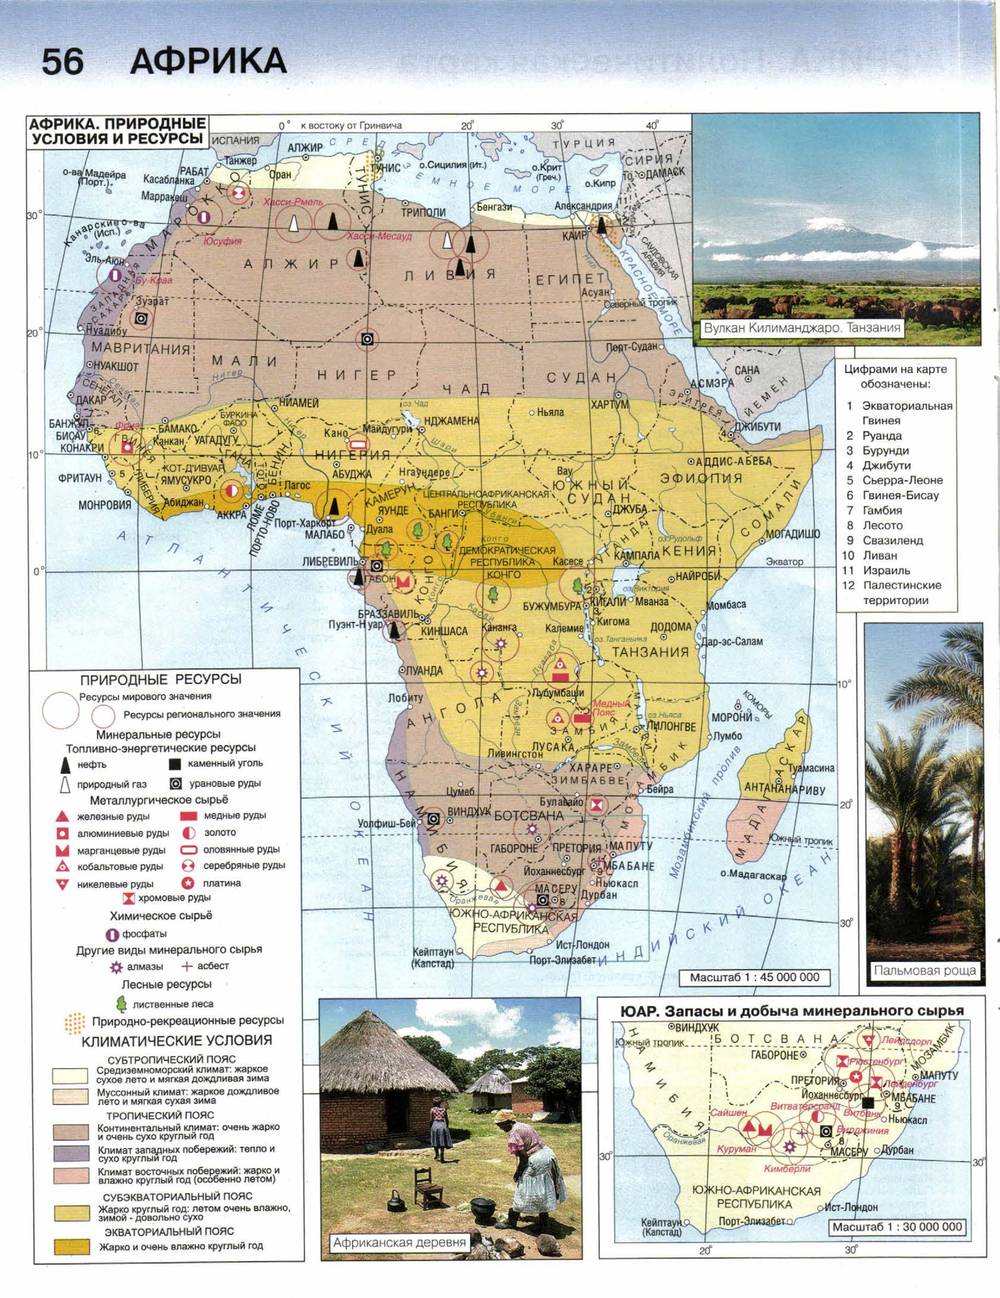 Ископаемые восточной африки. Ресурсы Африки карта. Природные ресурсы Африки атлас. Рекреационные ресурсы Африки карта. Минеральные ресурсы Африки карта.